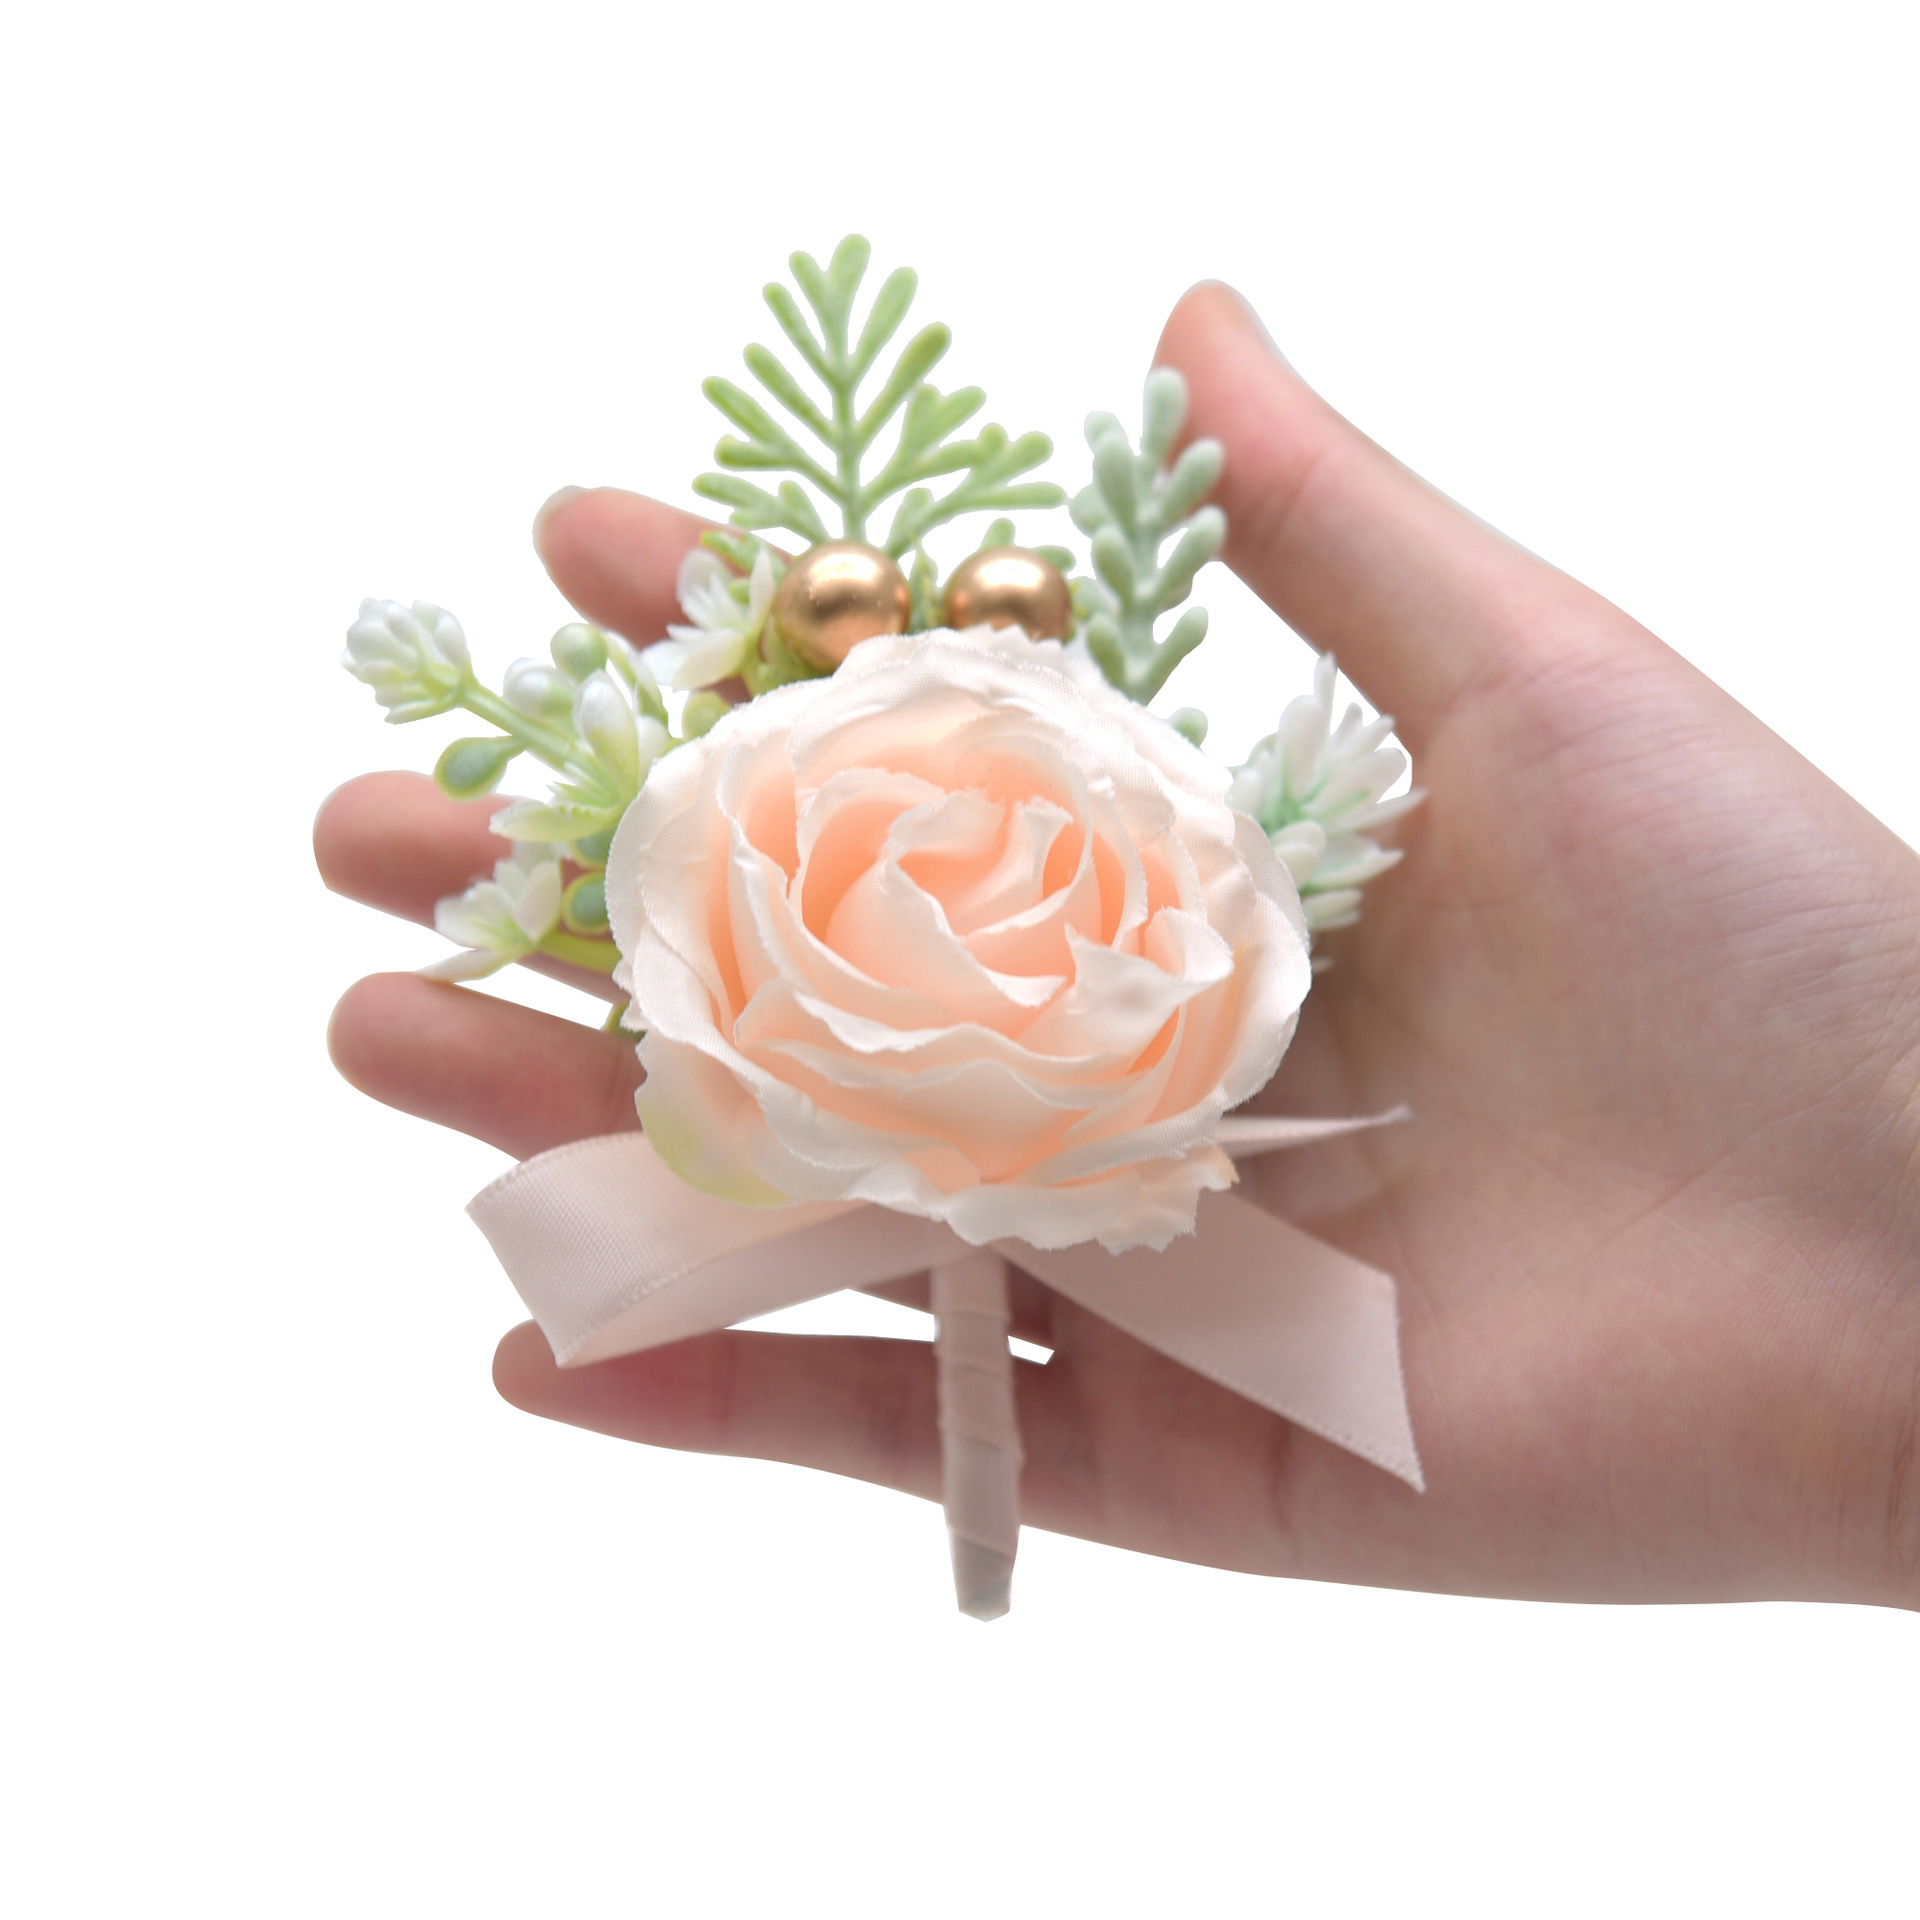  韓式婚禮單朵玫瑰仿真絹布手腕花胸花大全套